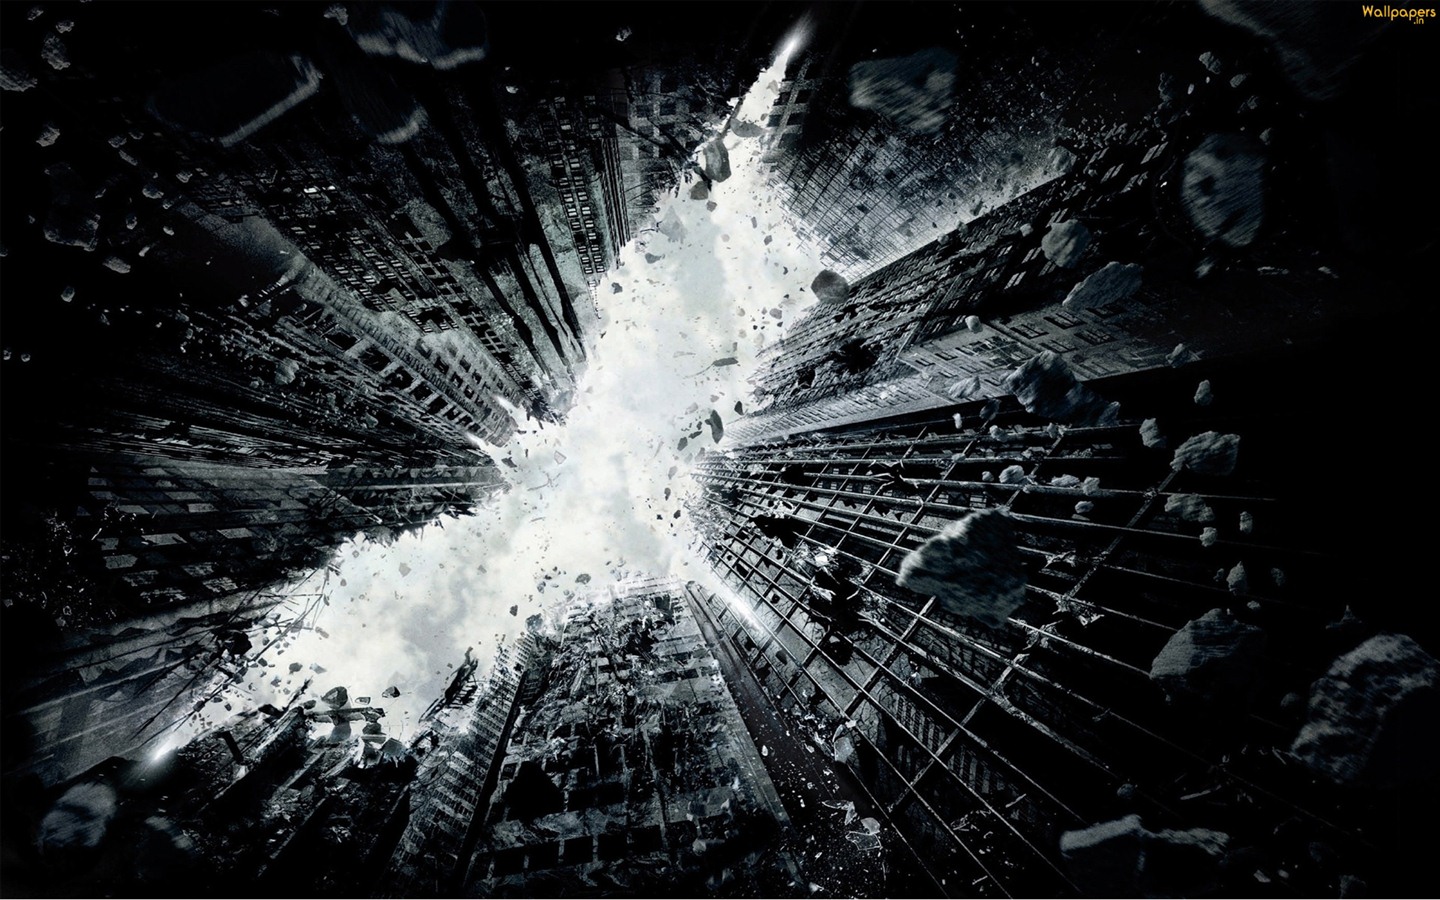 The Dark Knight Rises 2012 HD wallpapers #6 - 1440x900